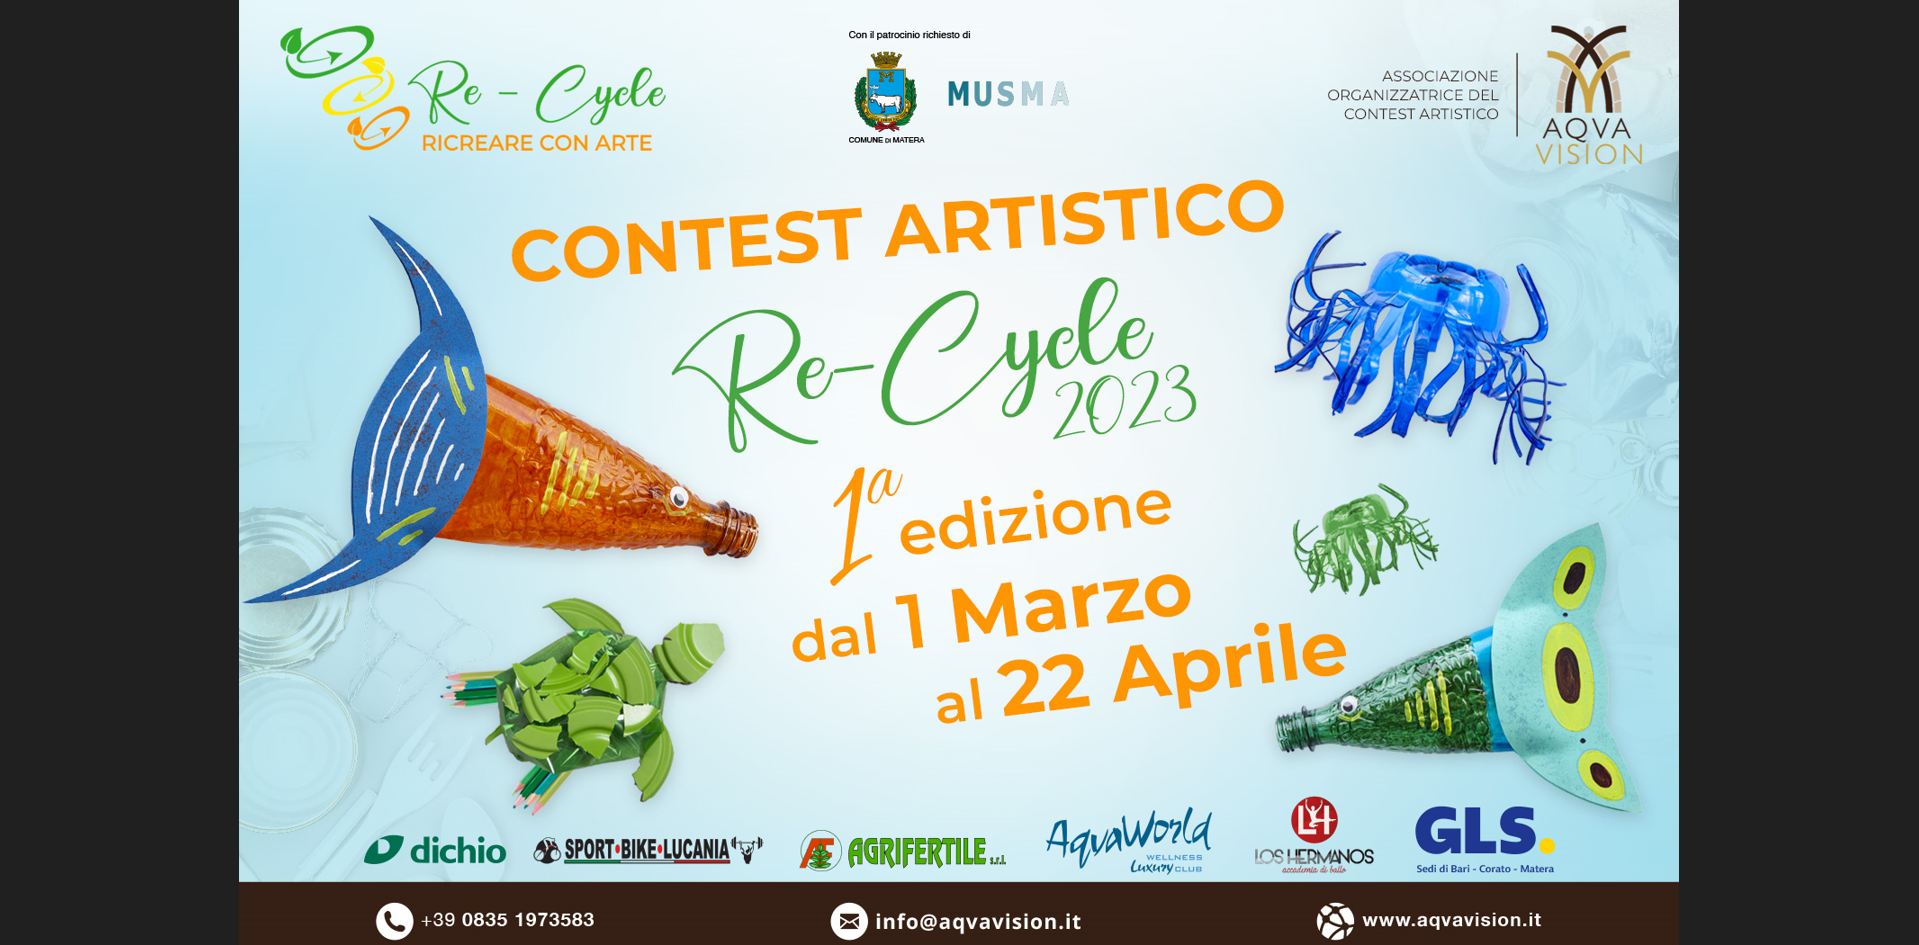 “Re-Cycle: ricreare con arte”: a Matera contest artistico promosso dall’associazione culturale AqvaVision